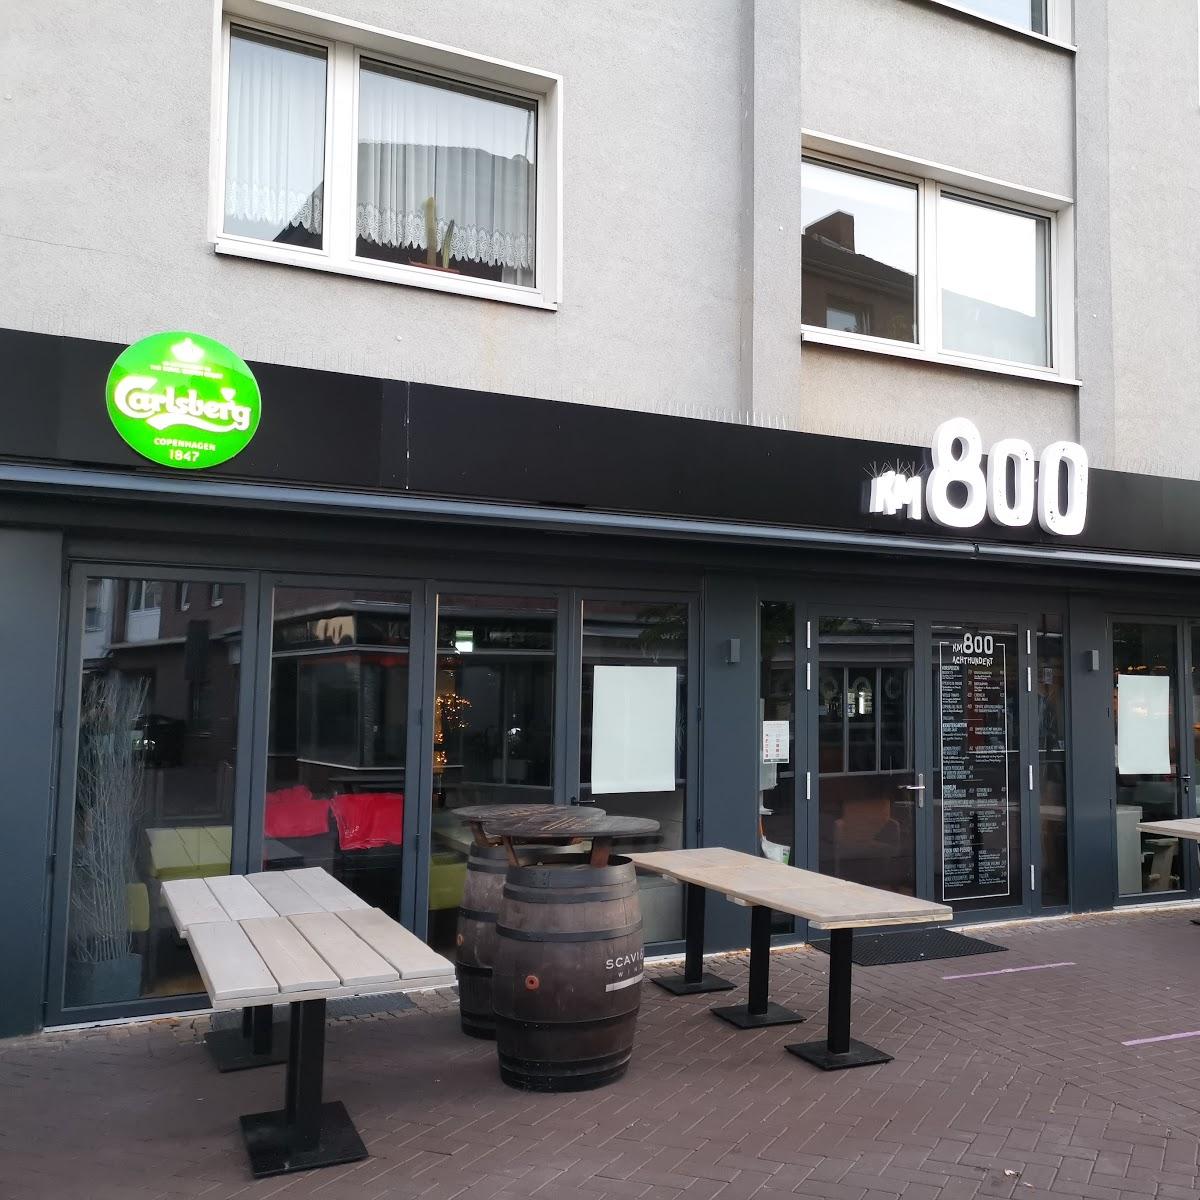 Restaurant "km800" in  Dinslaken